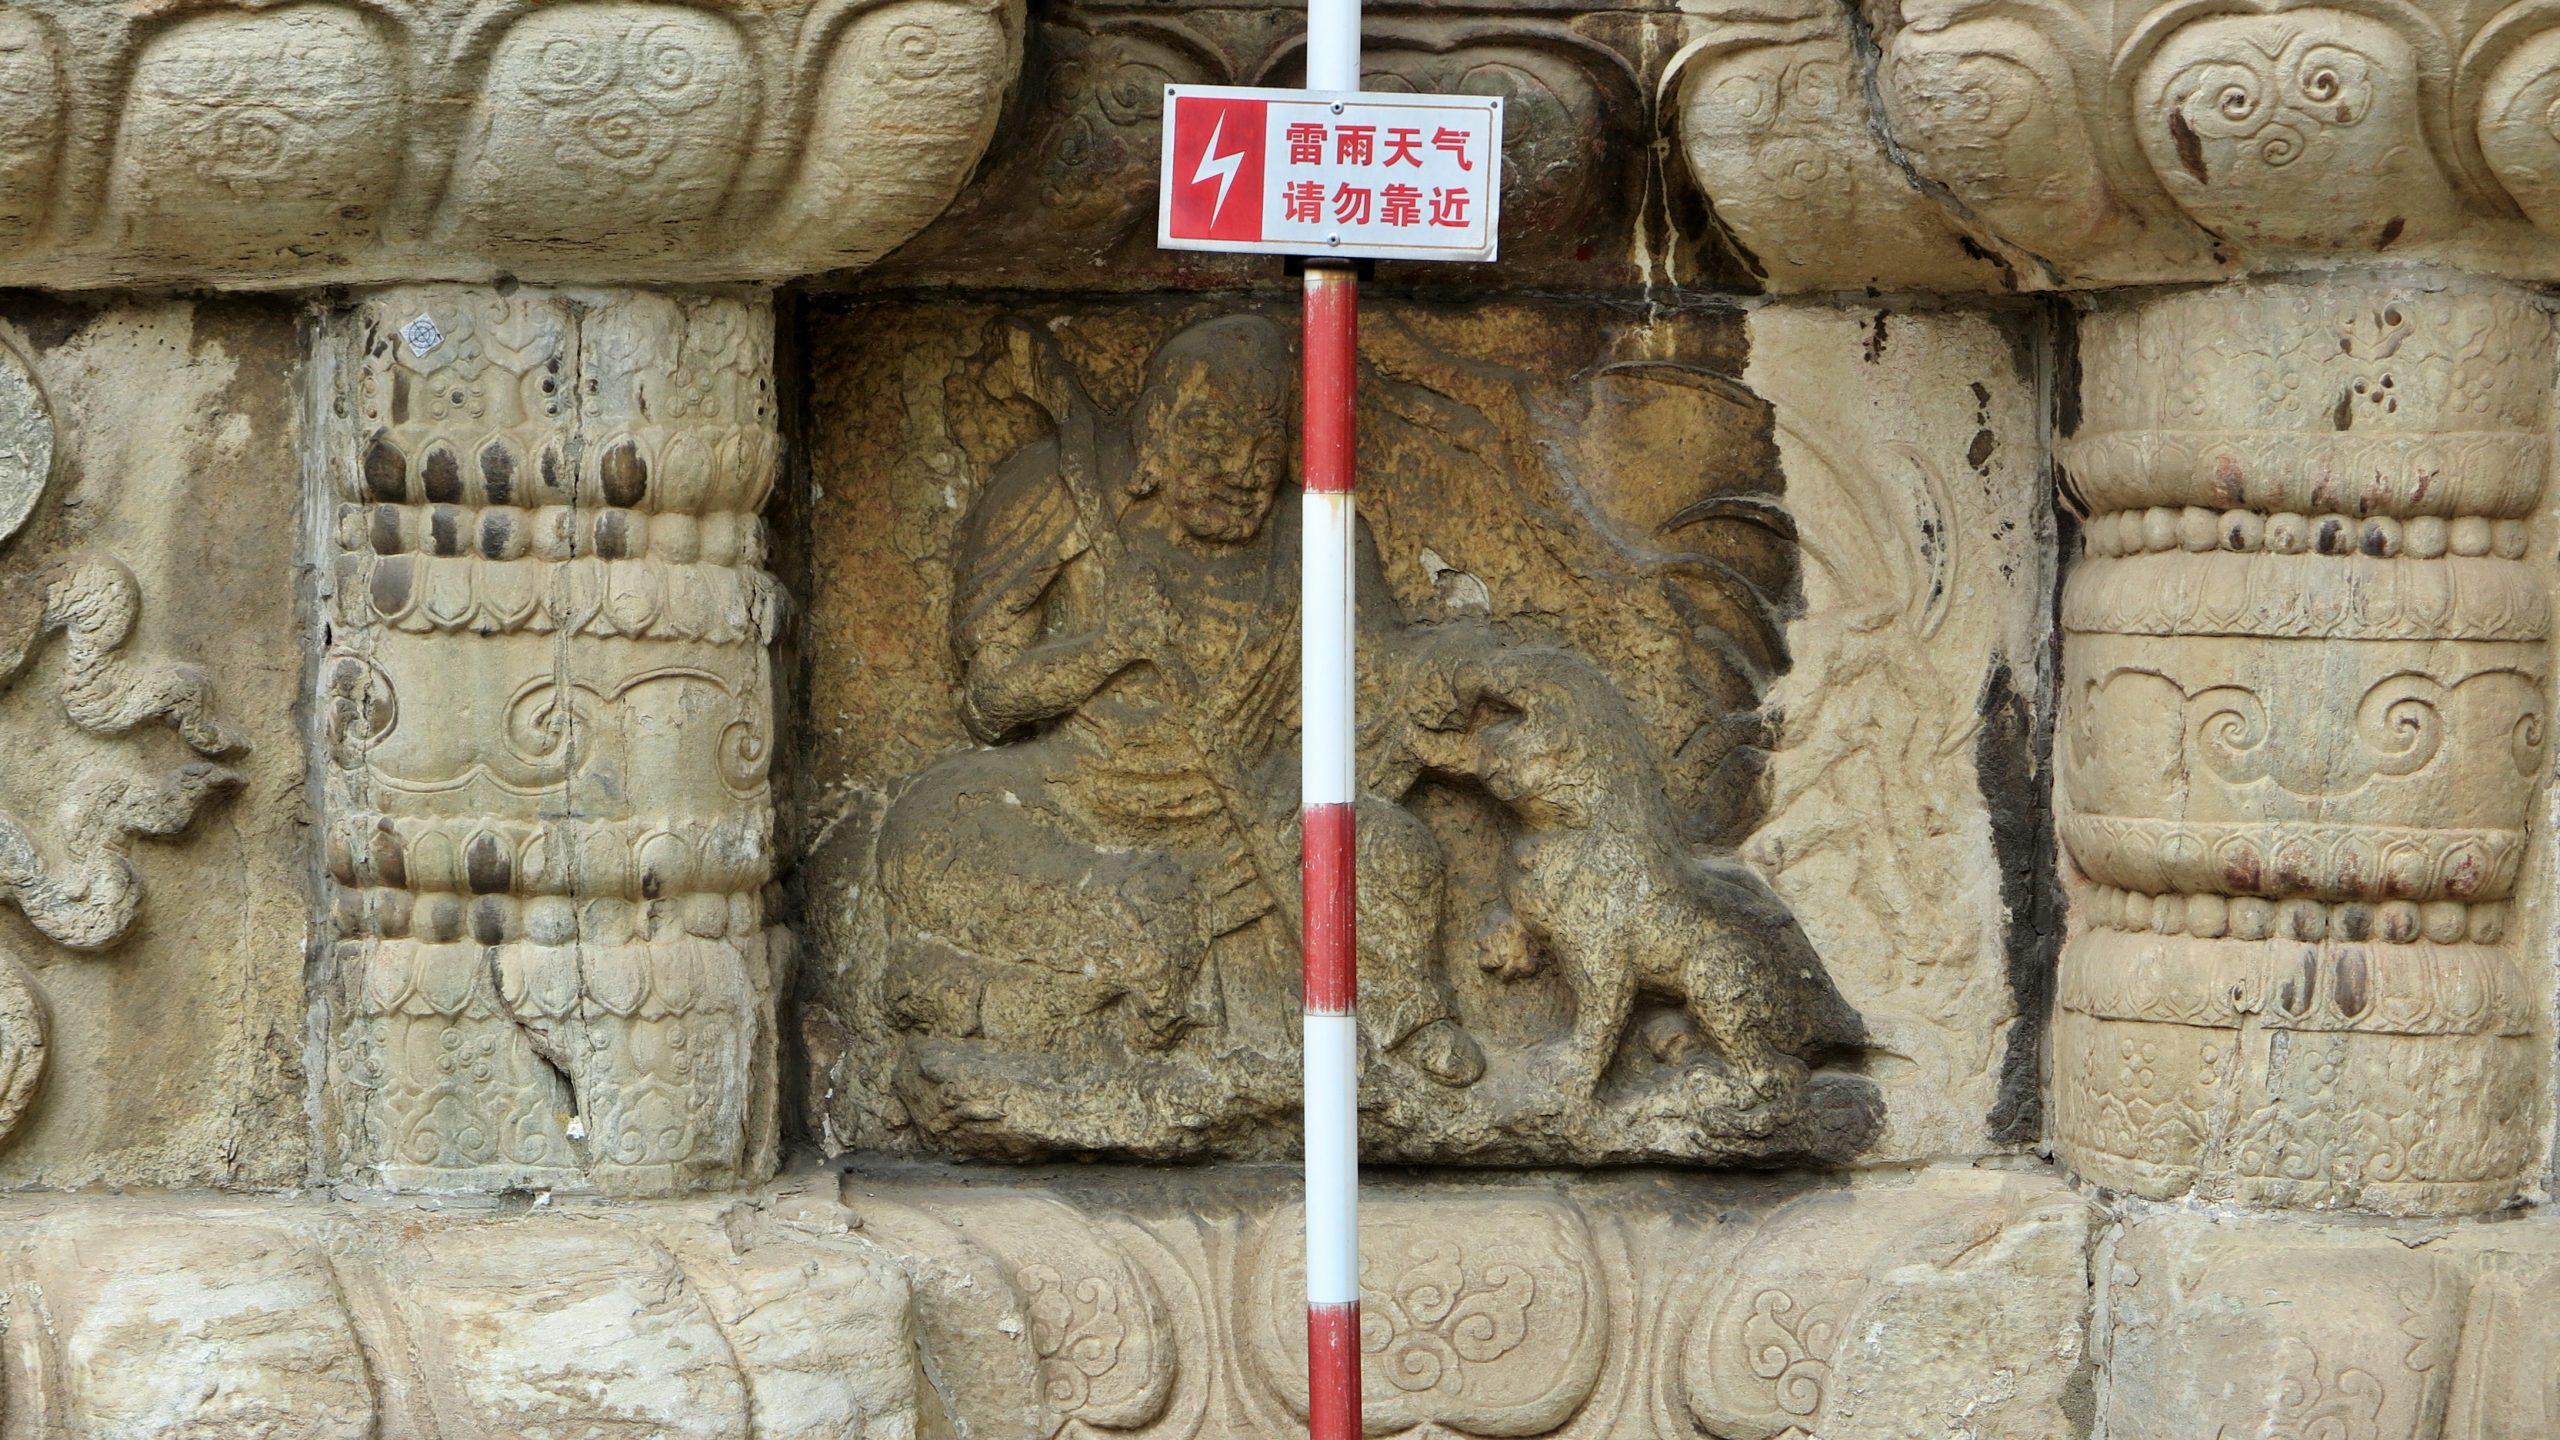 北京真觉寺––五塔金刚宝座 壁龛坐佛